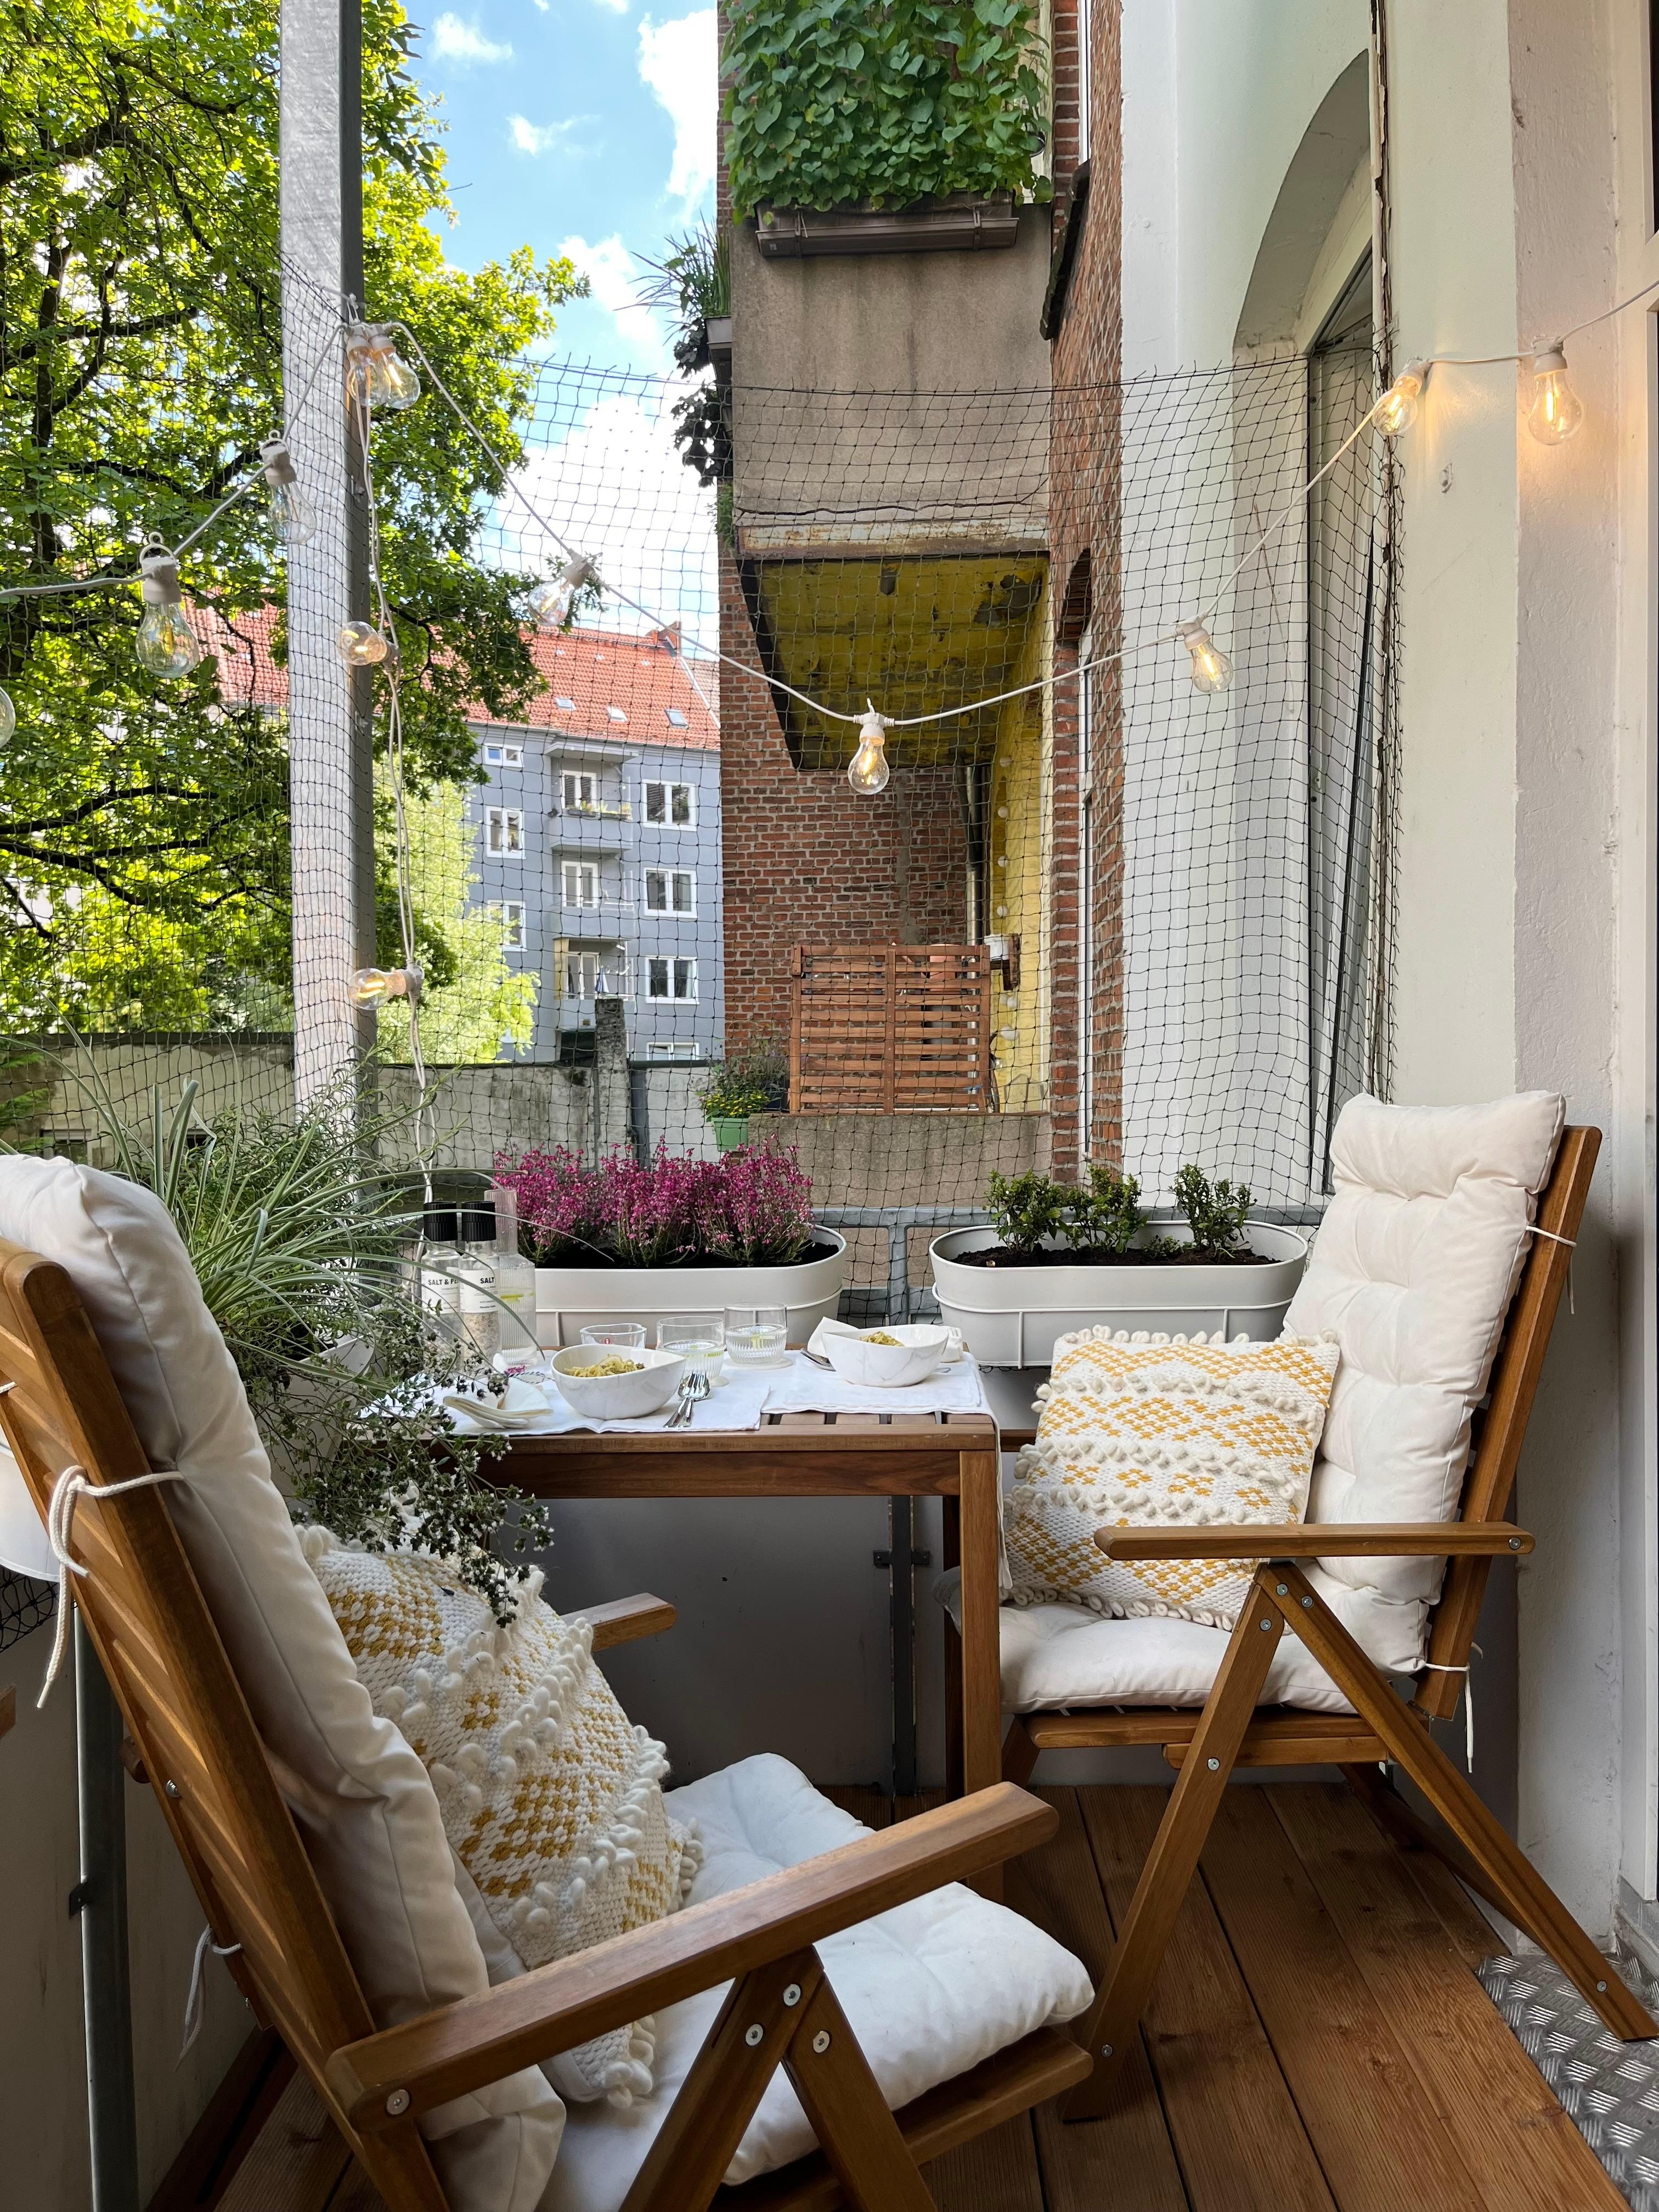 #balkon #balkonpflanzen #sommer #tablesetting #garten #balkonmöbel #einrichtungsideen